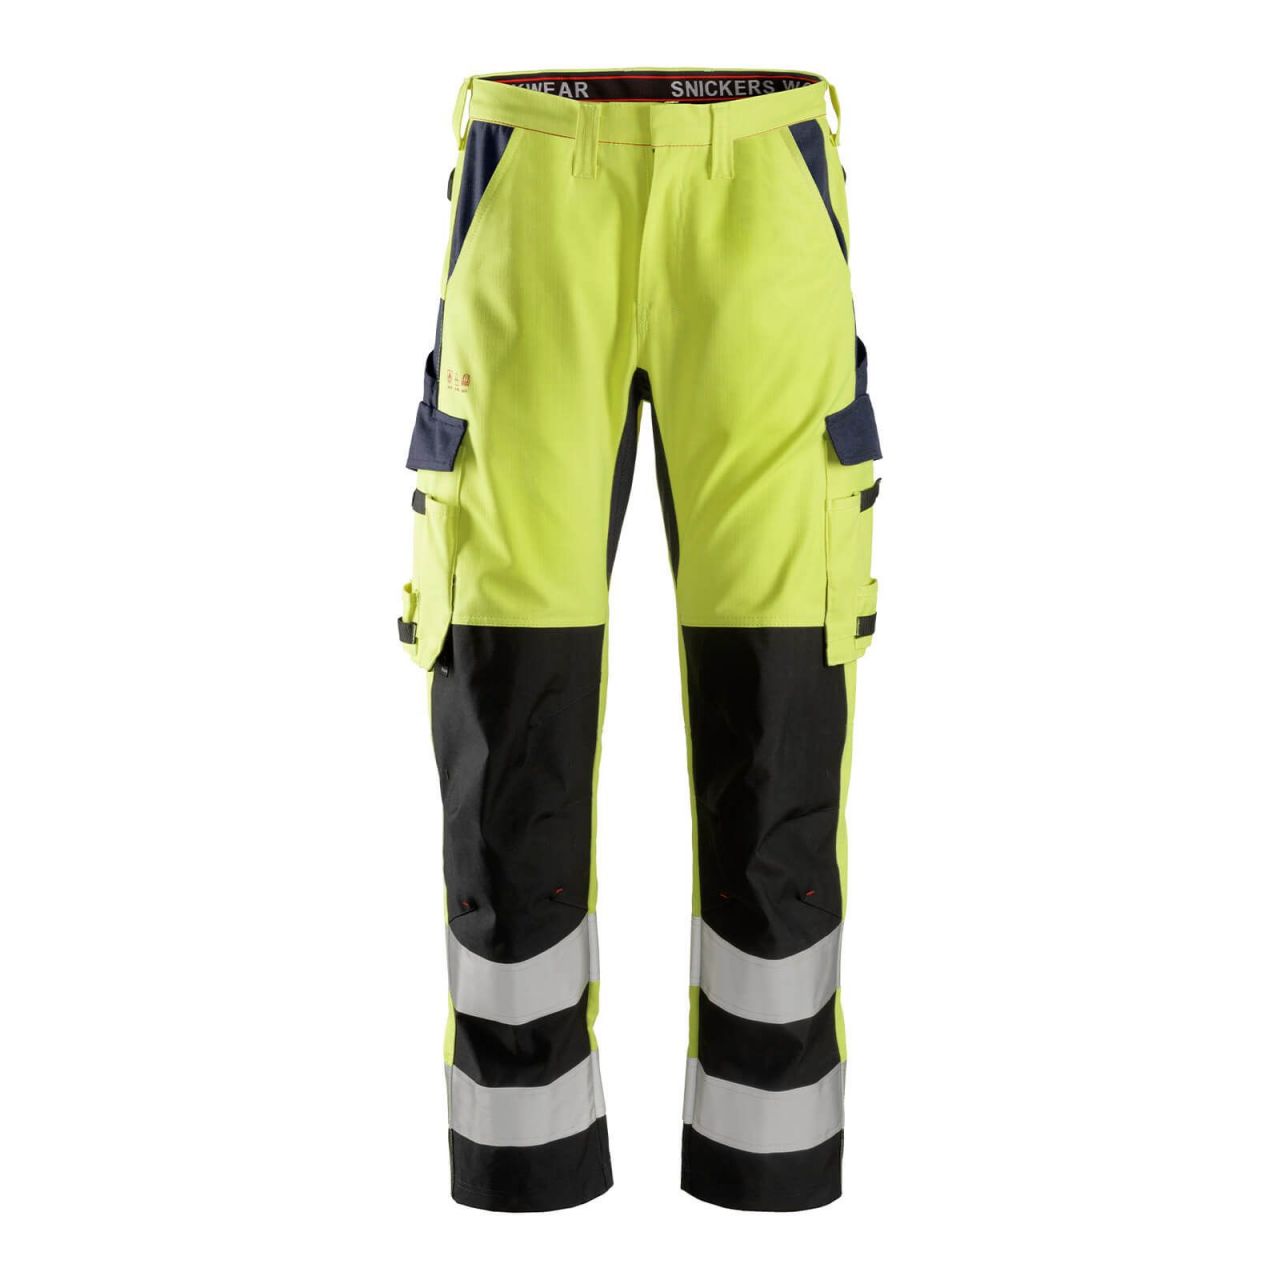 6364 Pantalones largos de trabajo de alta visibilidad clase 2 con espinilla reforzada ProtecWork amarillo-azul marino talla 128